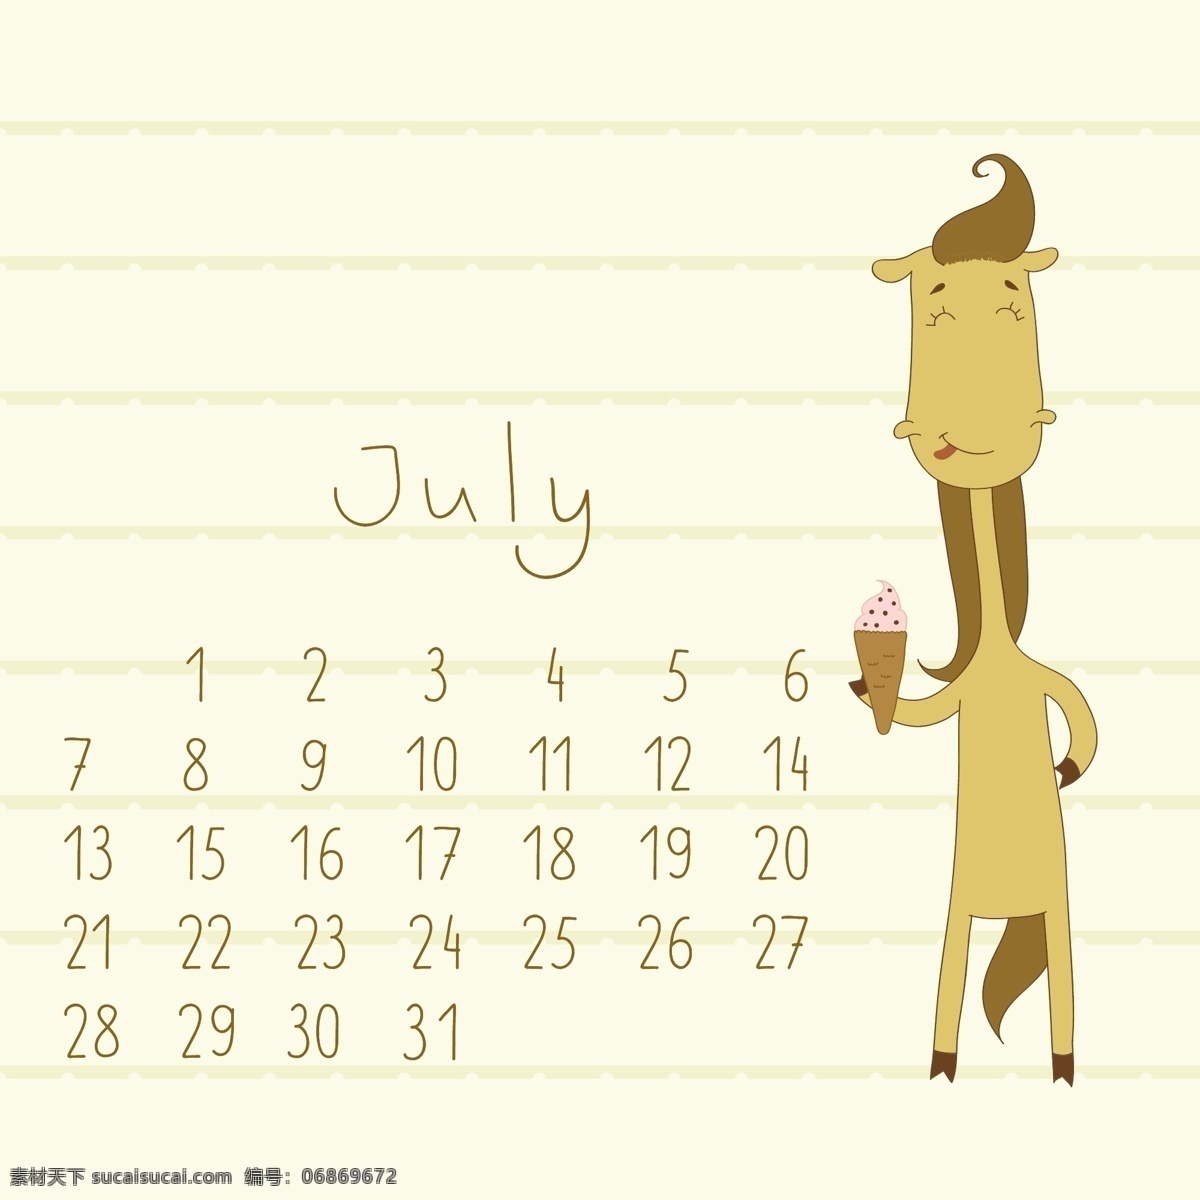 可爱 的卡 通 七月 月历 矢量 卡通 可爱的 可爱的卡通 汽车 日历 矢量节日 节日素材 其他节日